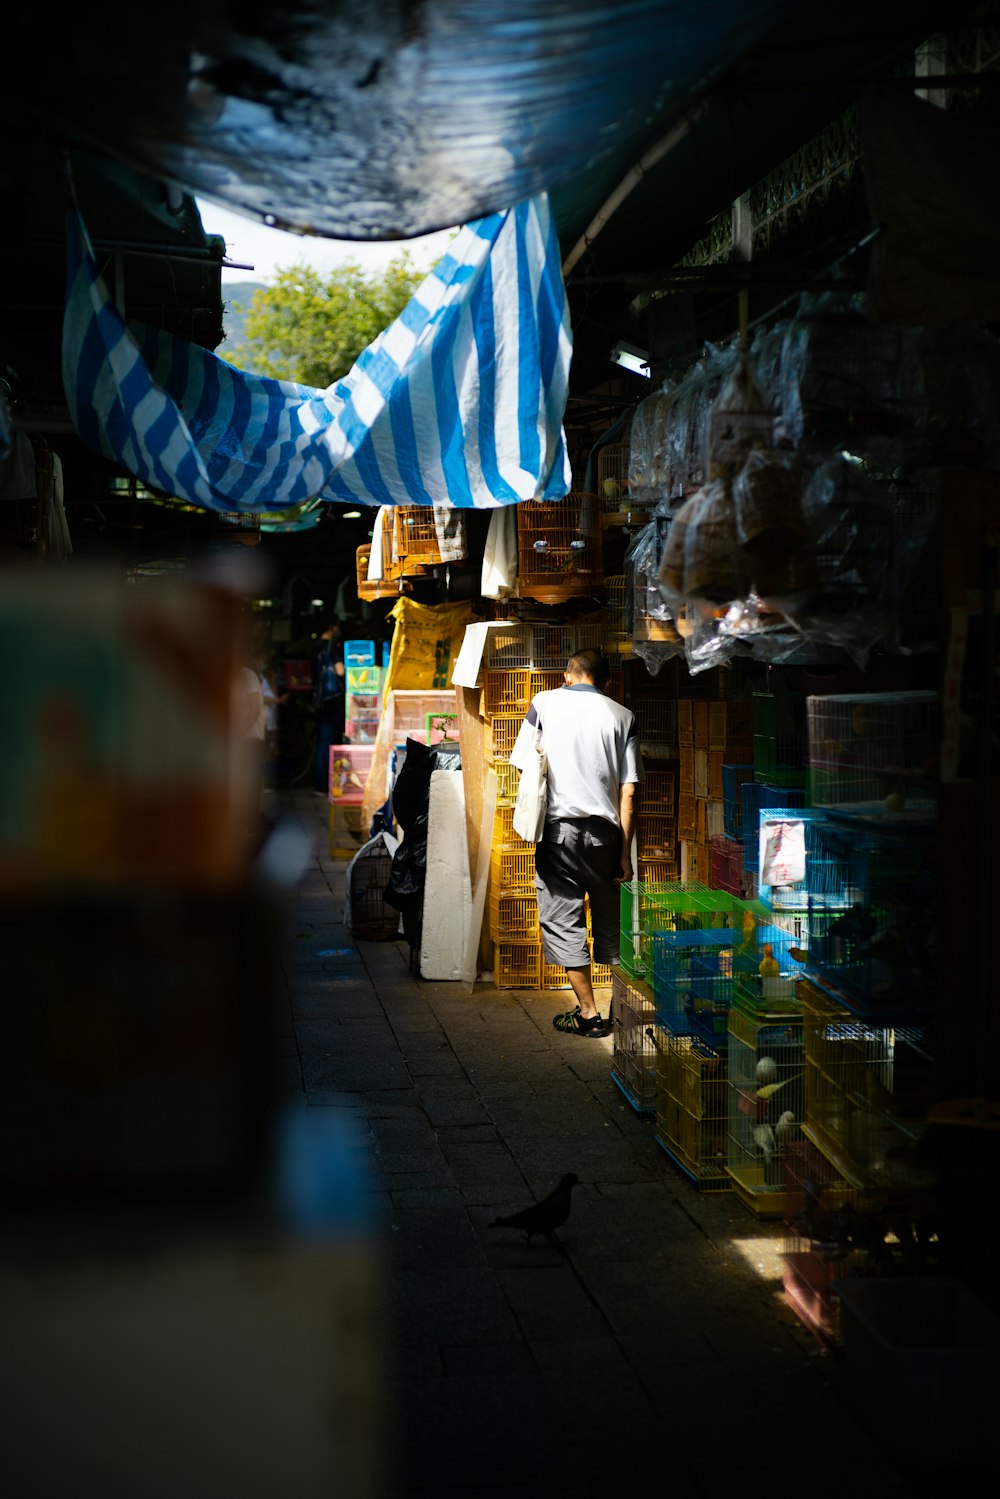 Un uomo è in piedi in un mercato con un ombrello a strisce bianche e blu